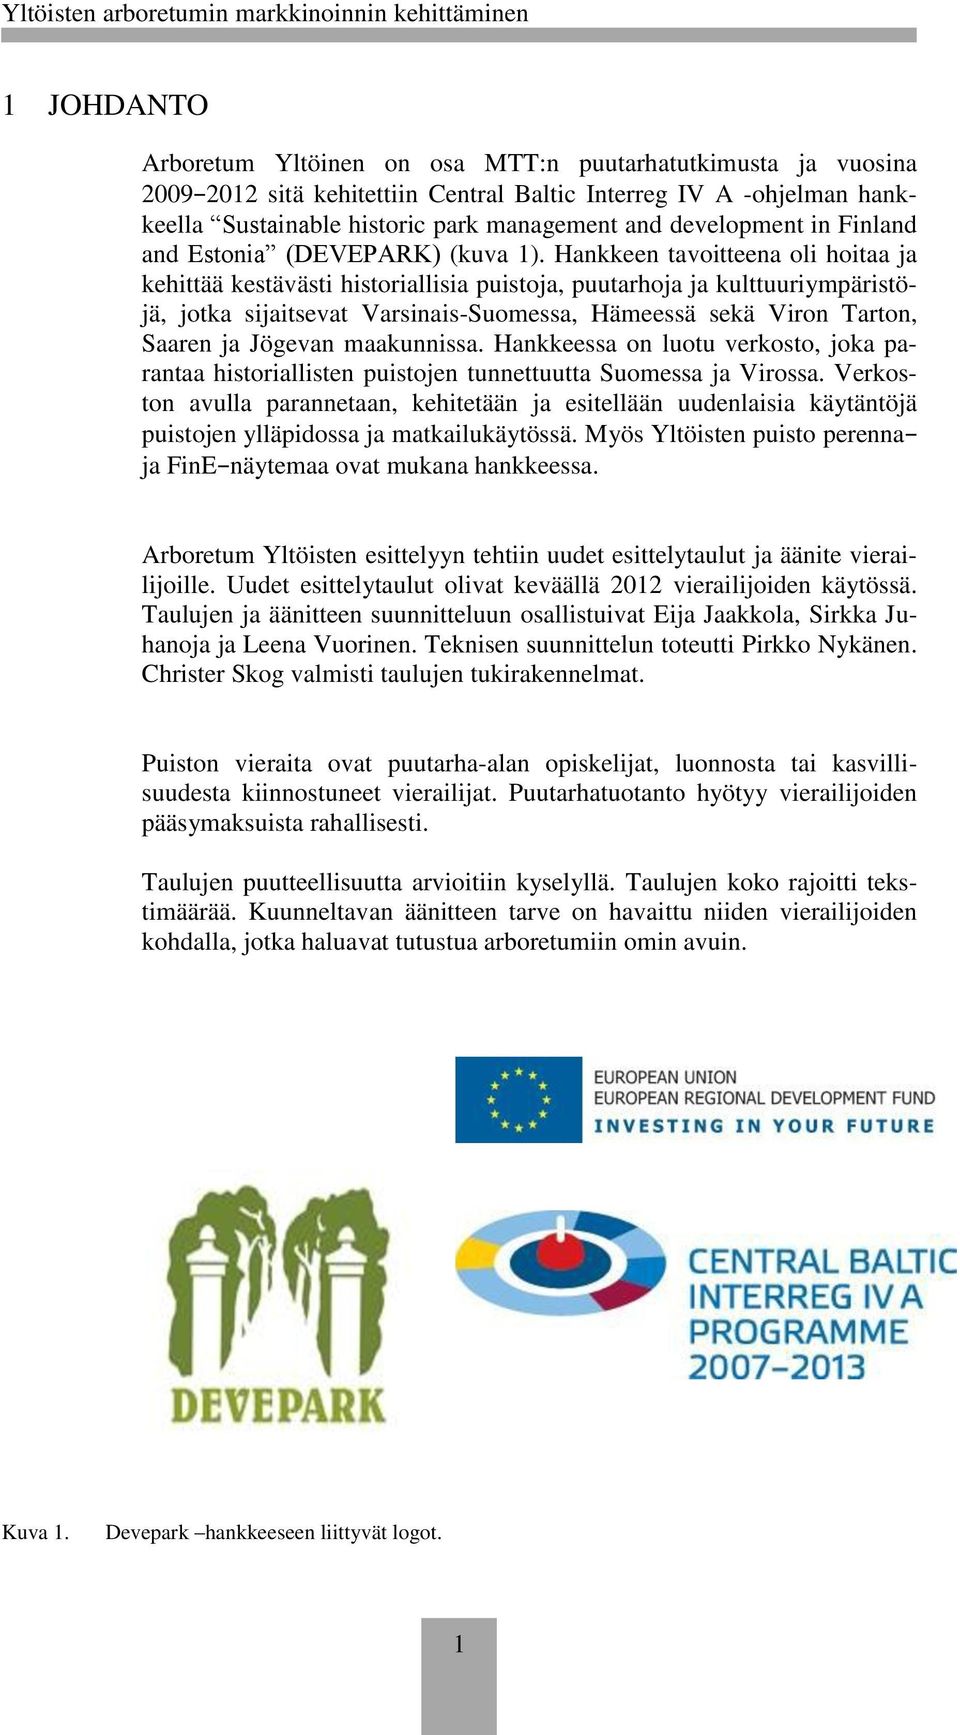 Hankkeen tavoitteena oli hoitaa ja kehittää kestävästi historiallisia puistoja, puutarhoja ja kulttuuriympäristöjä, jotka sijaitsevat Varsinais-Suomessa, Hämeessä sekä Viron Tarton, Saaren ja Jögevan